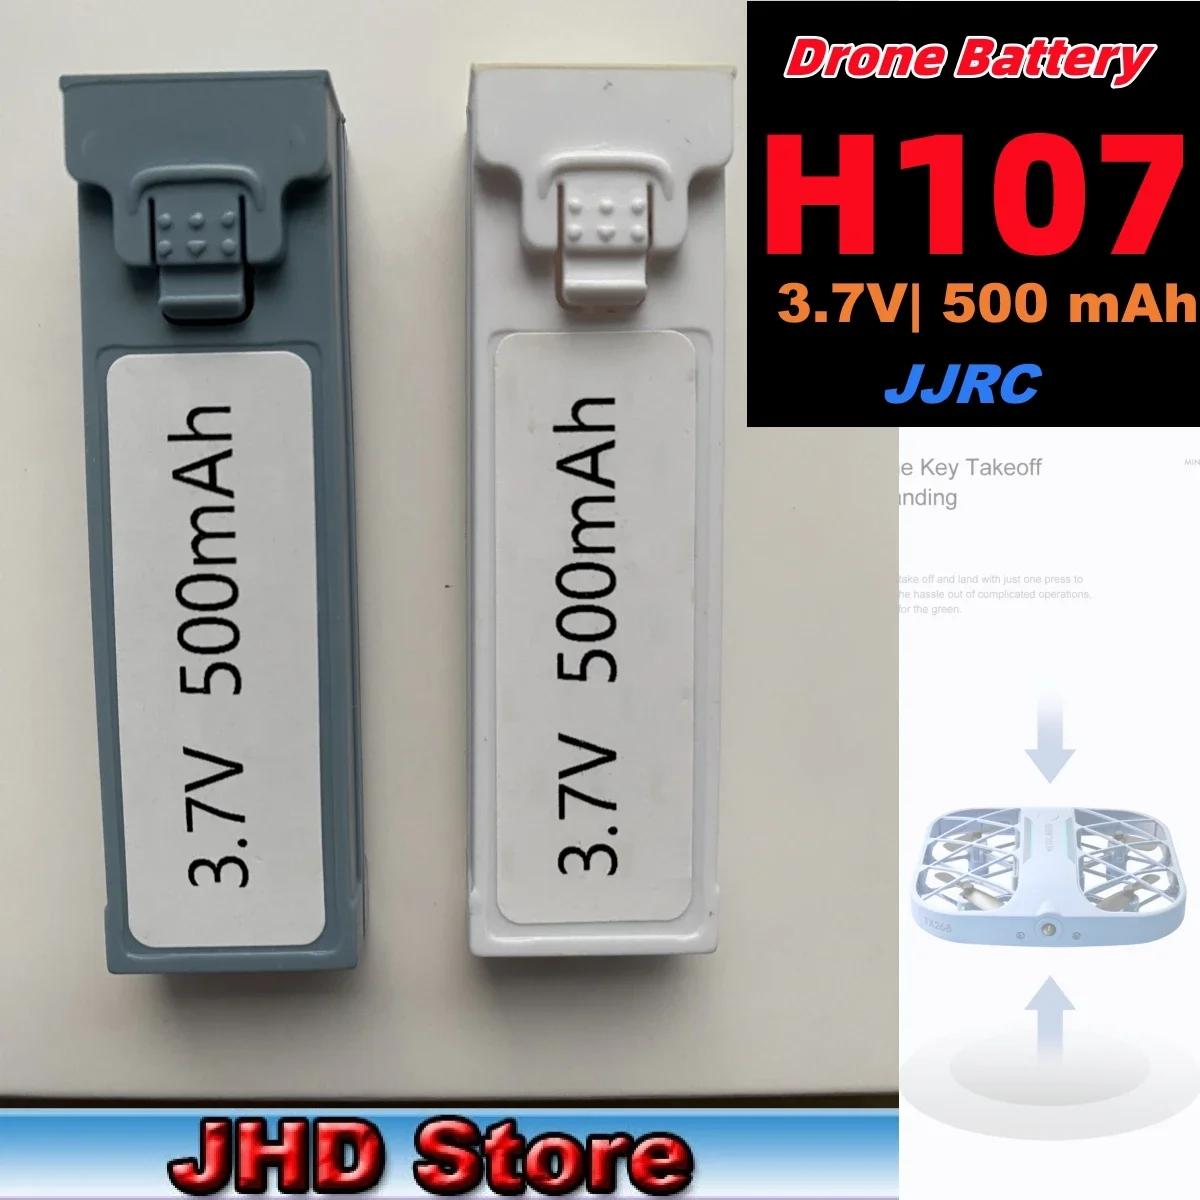 

JHD JJRC H107 Mini Drone Battery Original 3.7V 500Mah JJRC H107 Battery Quadcopter JJRC H107 Mini Drone Battery Wholesaler